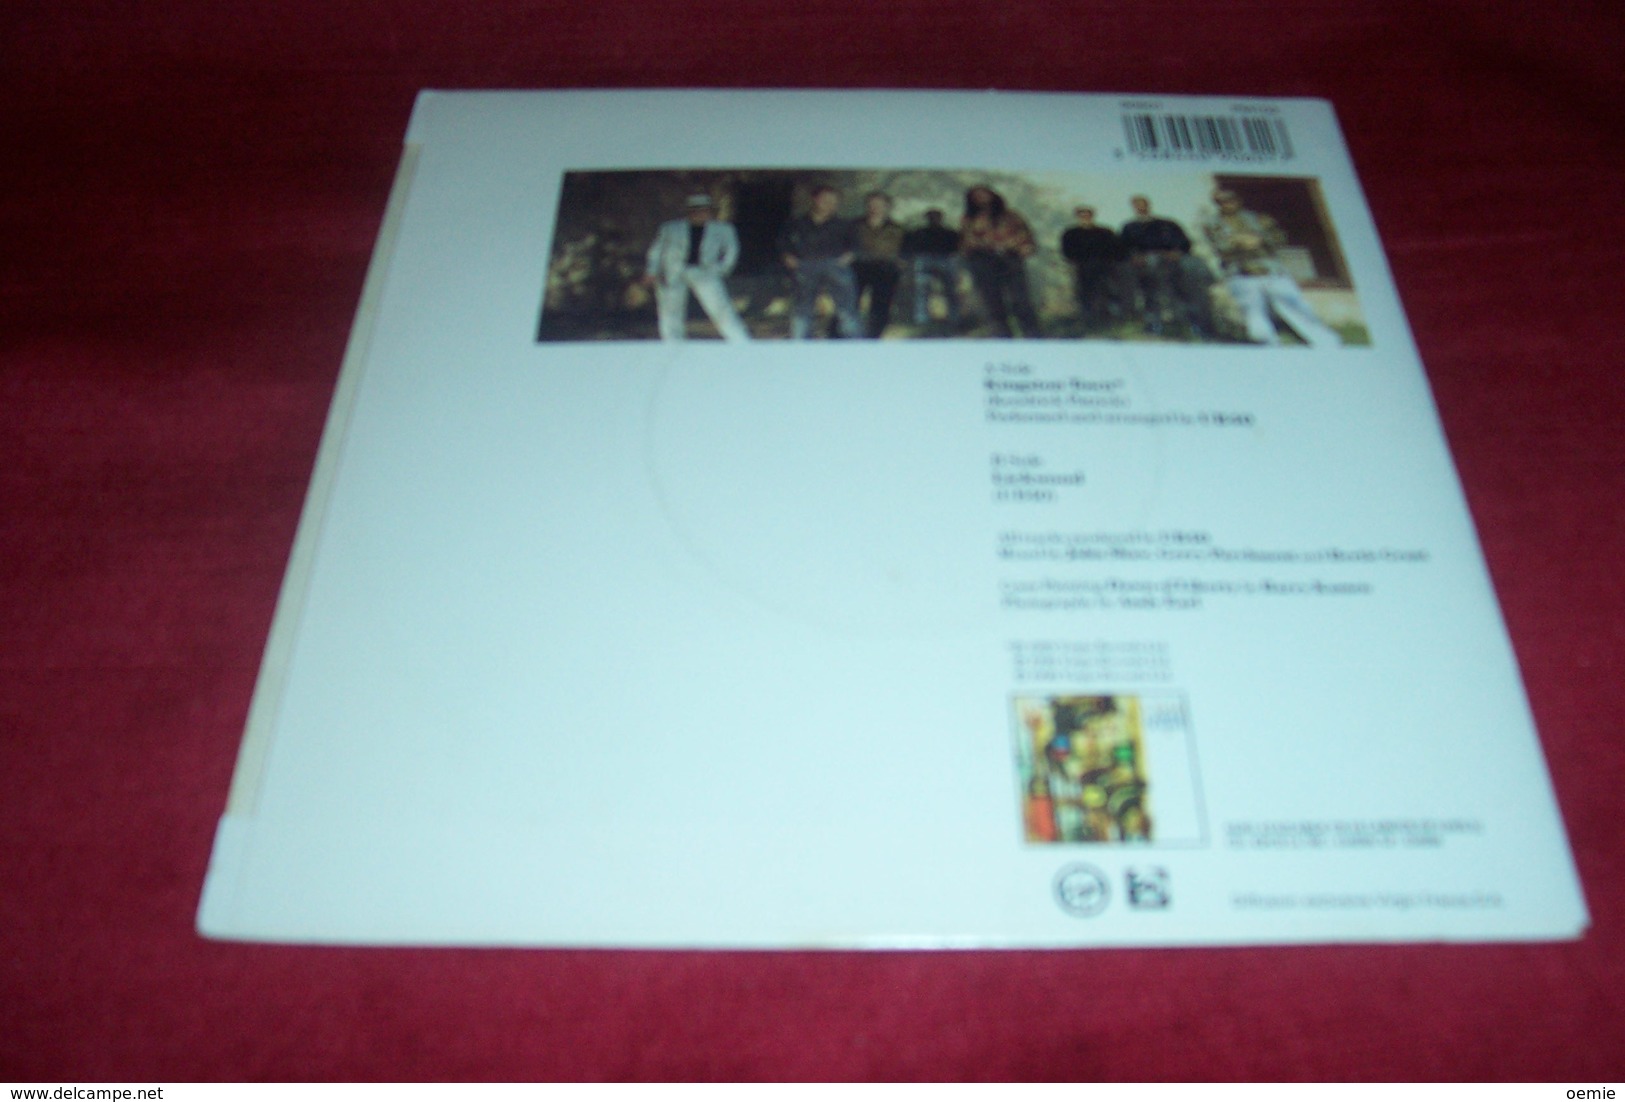 UB40 - Autres - Musique Anglaise